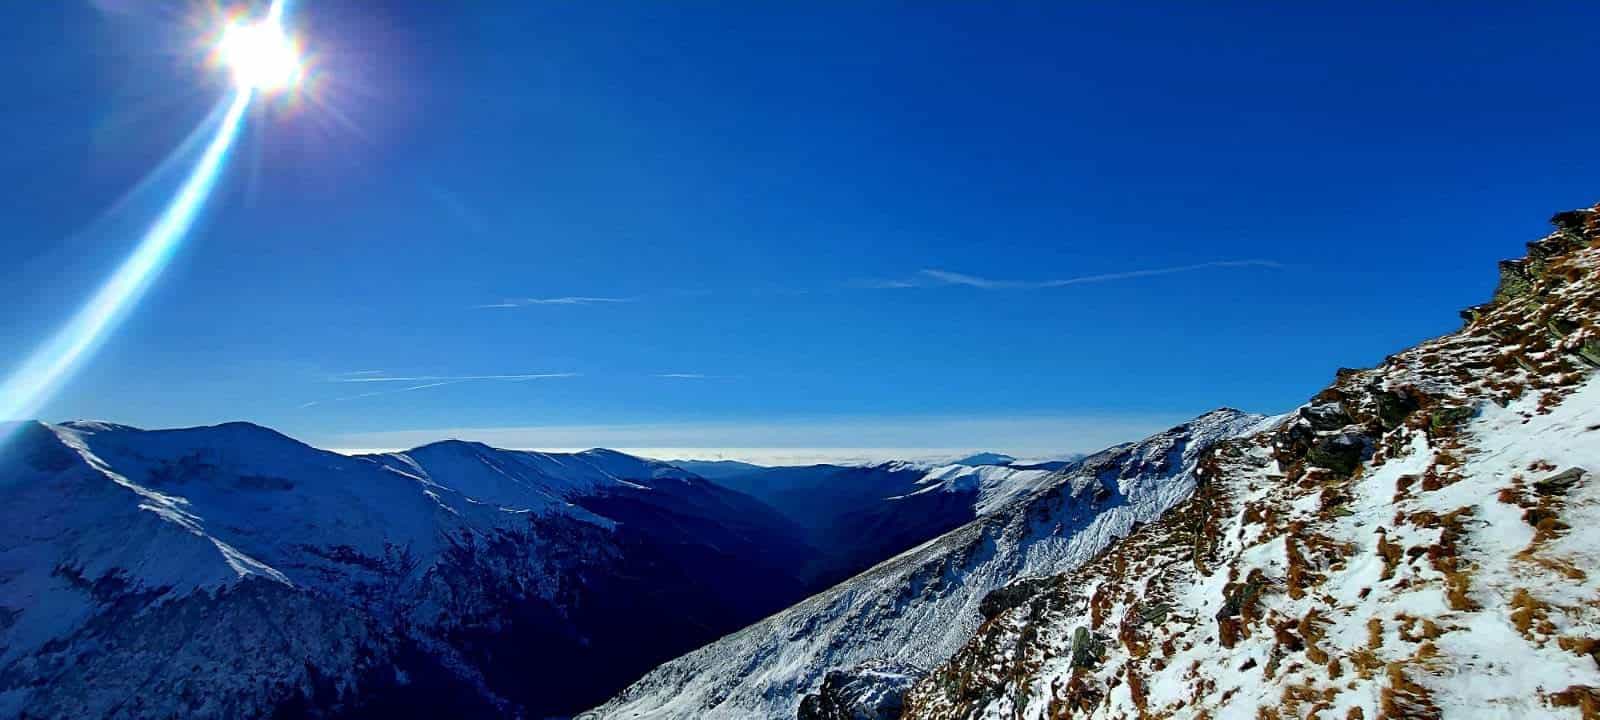 foto crestele munţilor făgăraş au fost acoperite de zăpadă - salvamont: stratul este suficient pentru a pune probleme drumeților